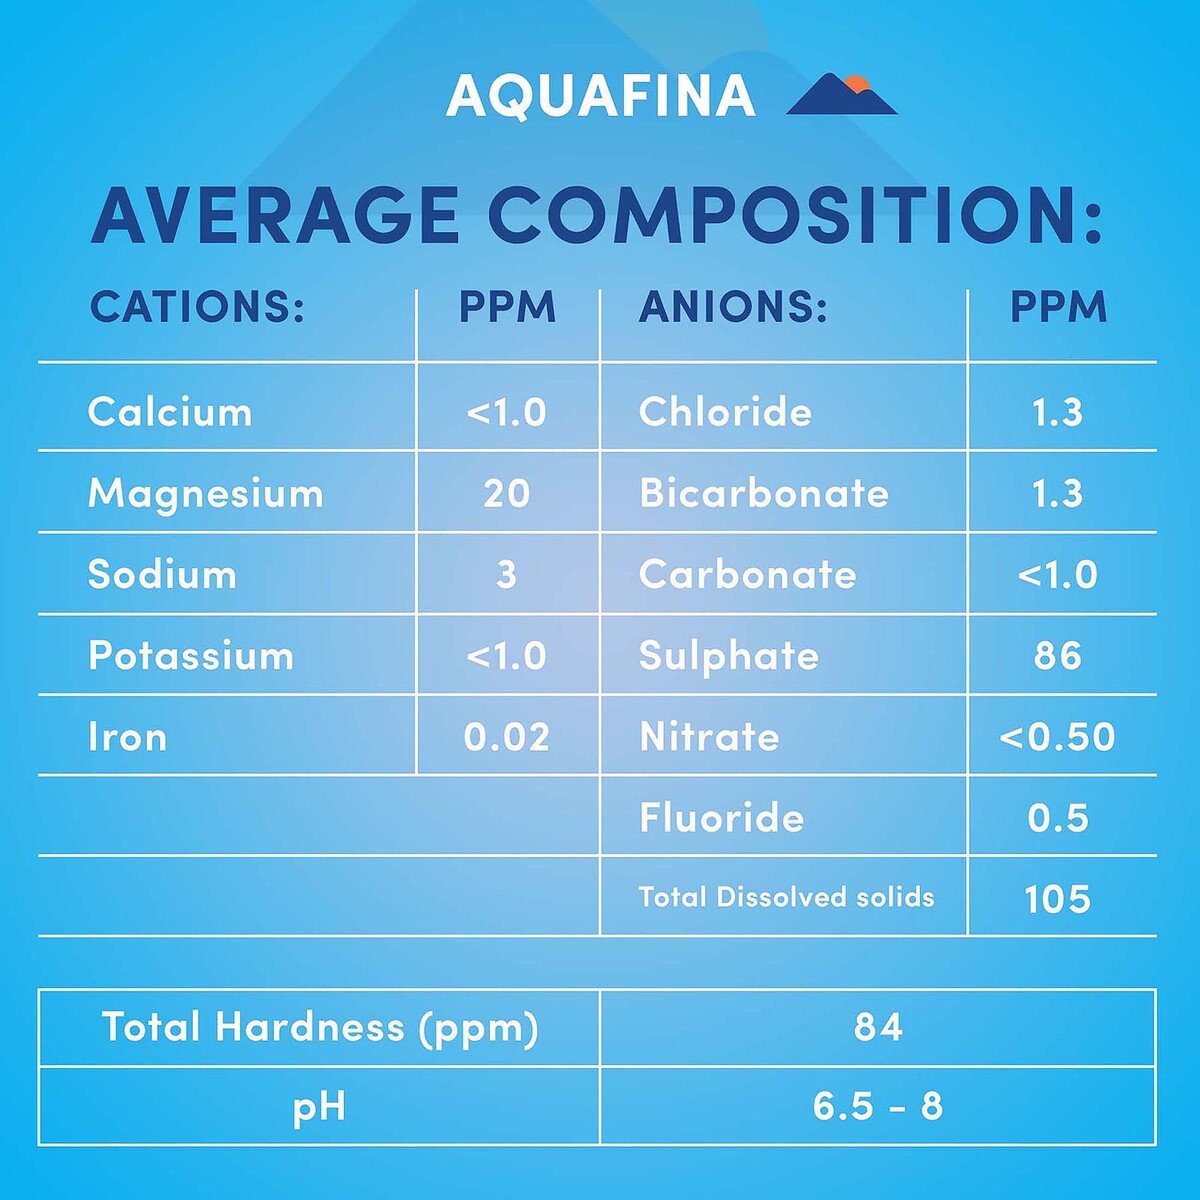 Aquafina Drinking Water 30 x 330 ml